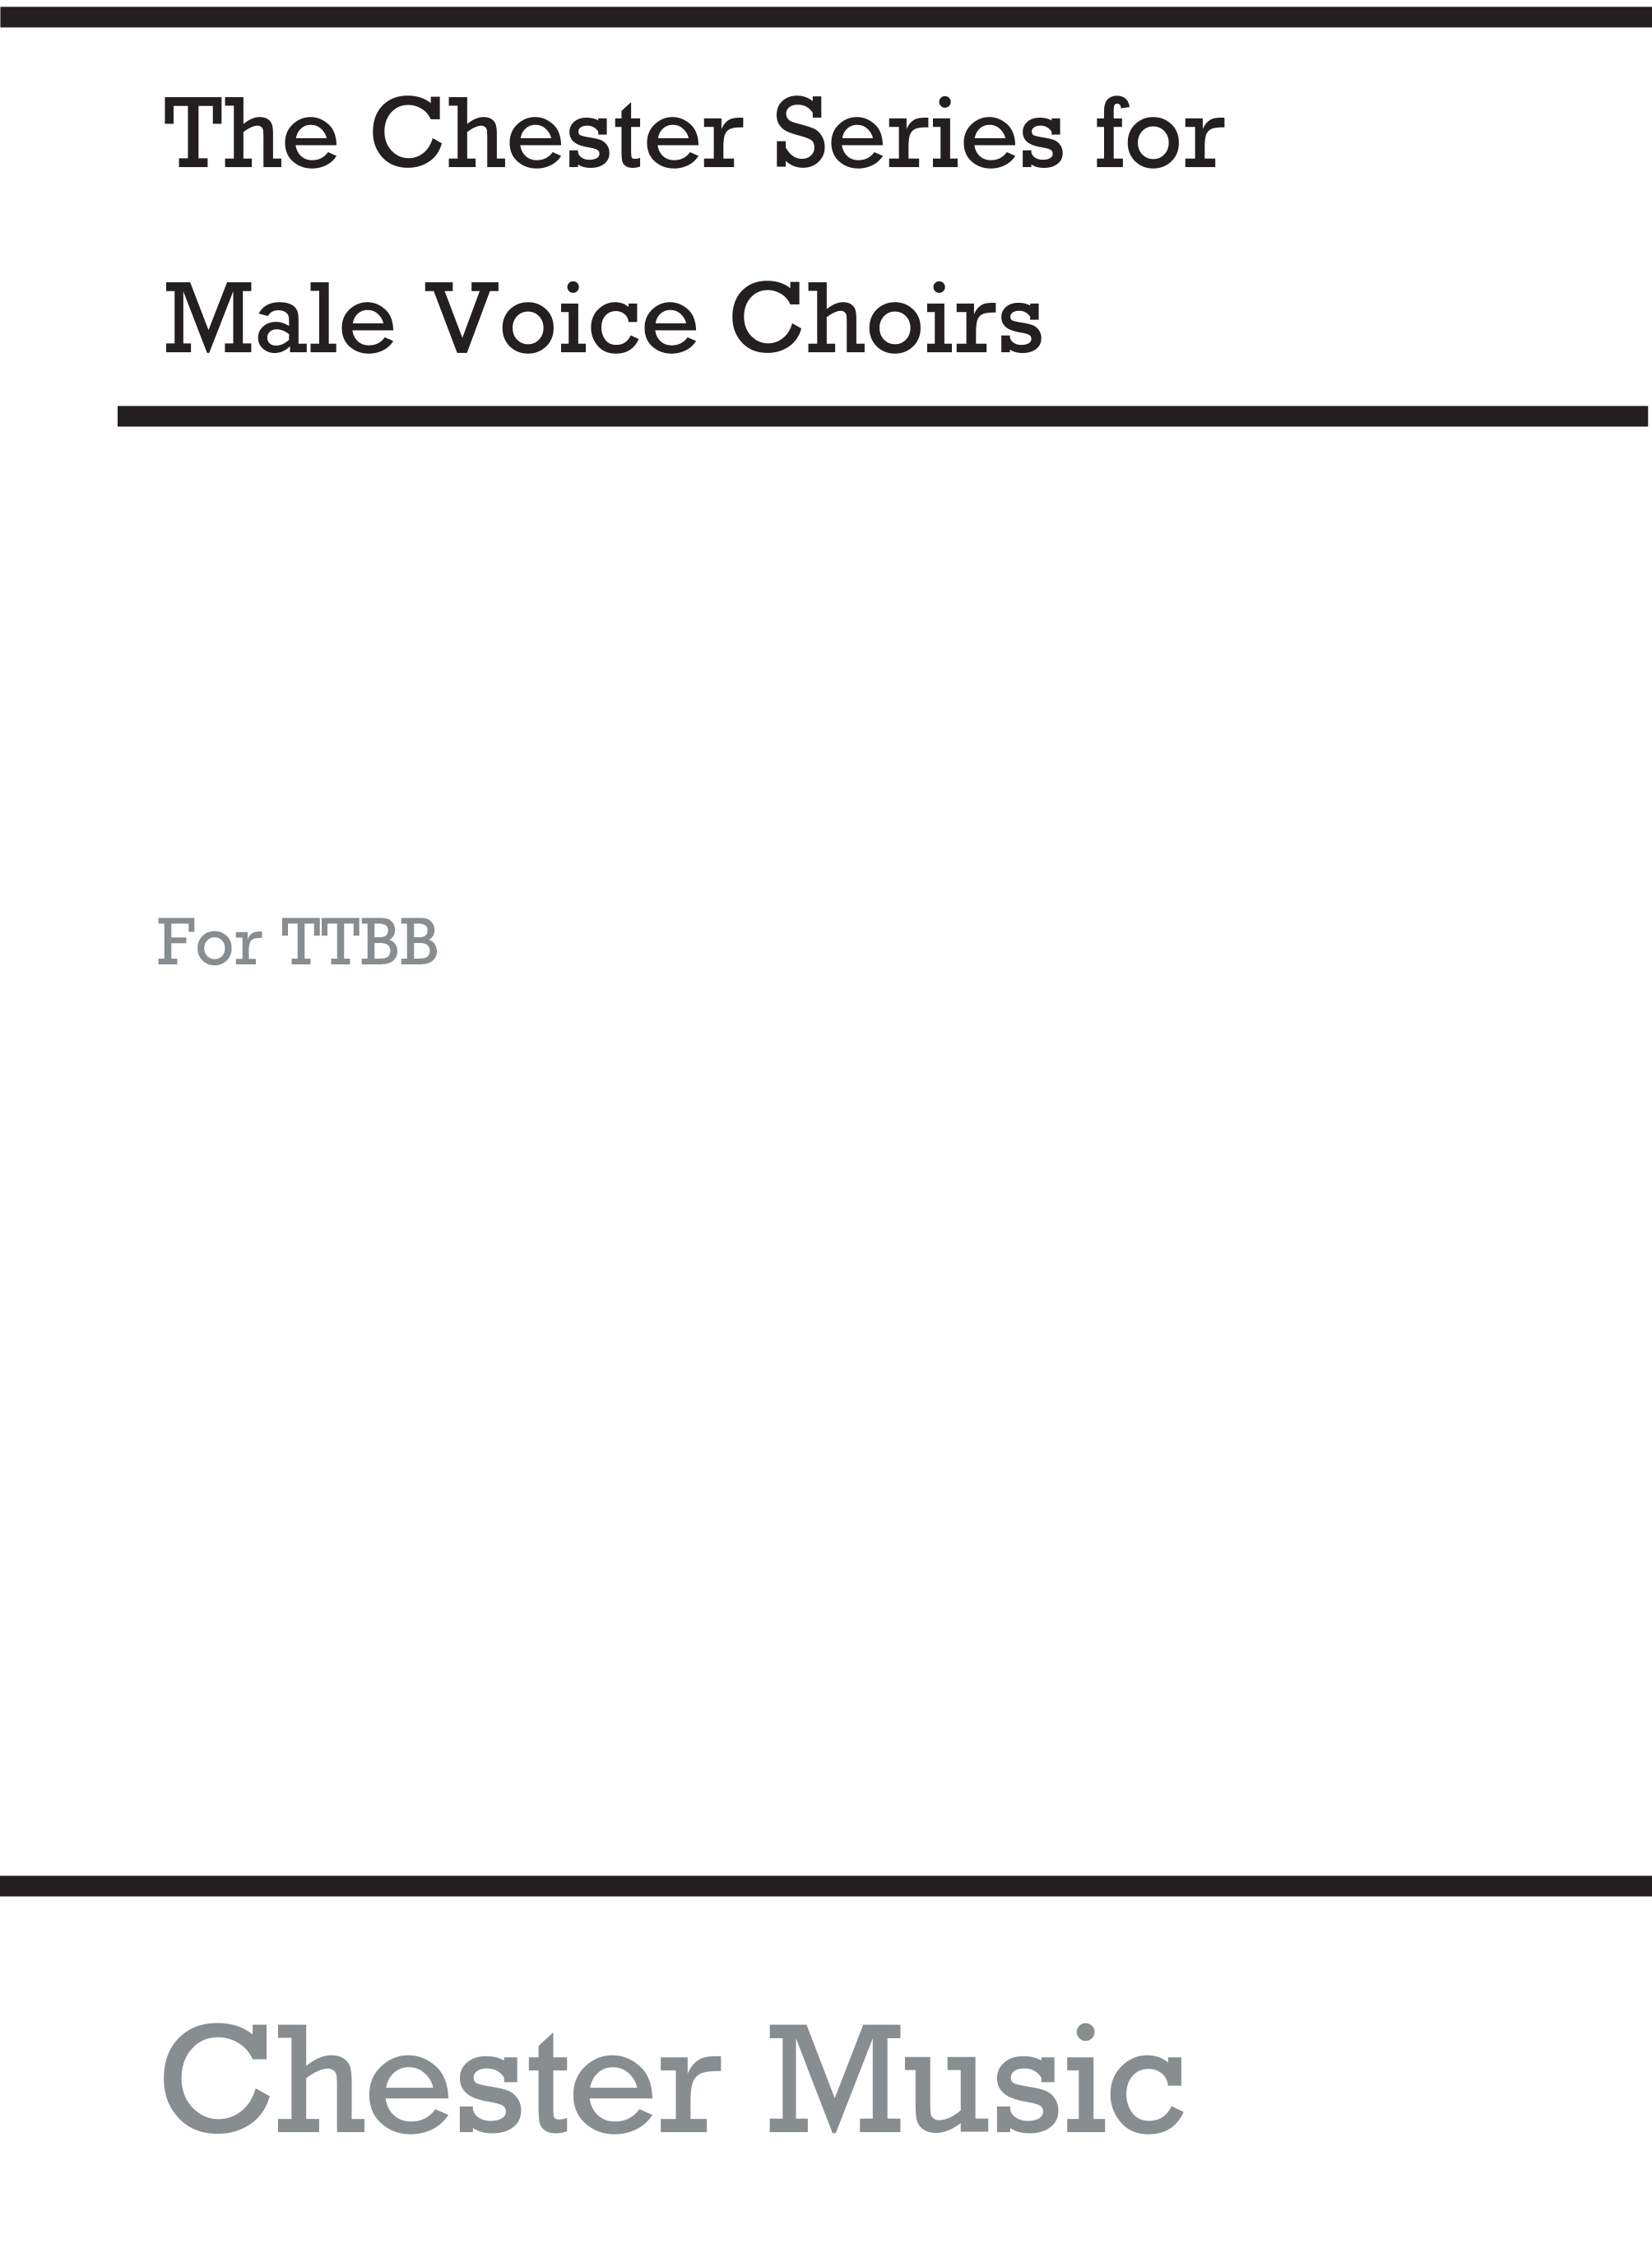 Antonín Dvo?ák: Village Gossip: TTBB: Vocal Score